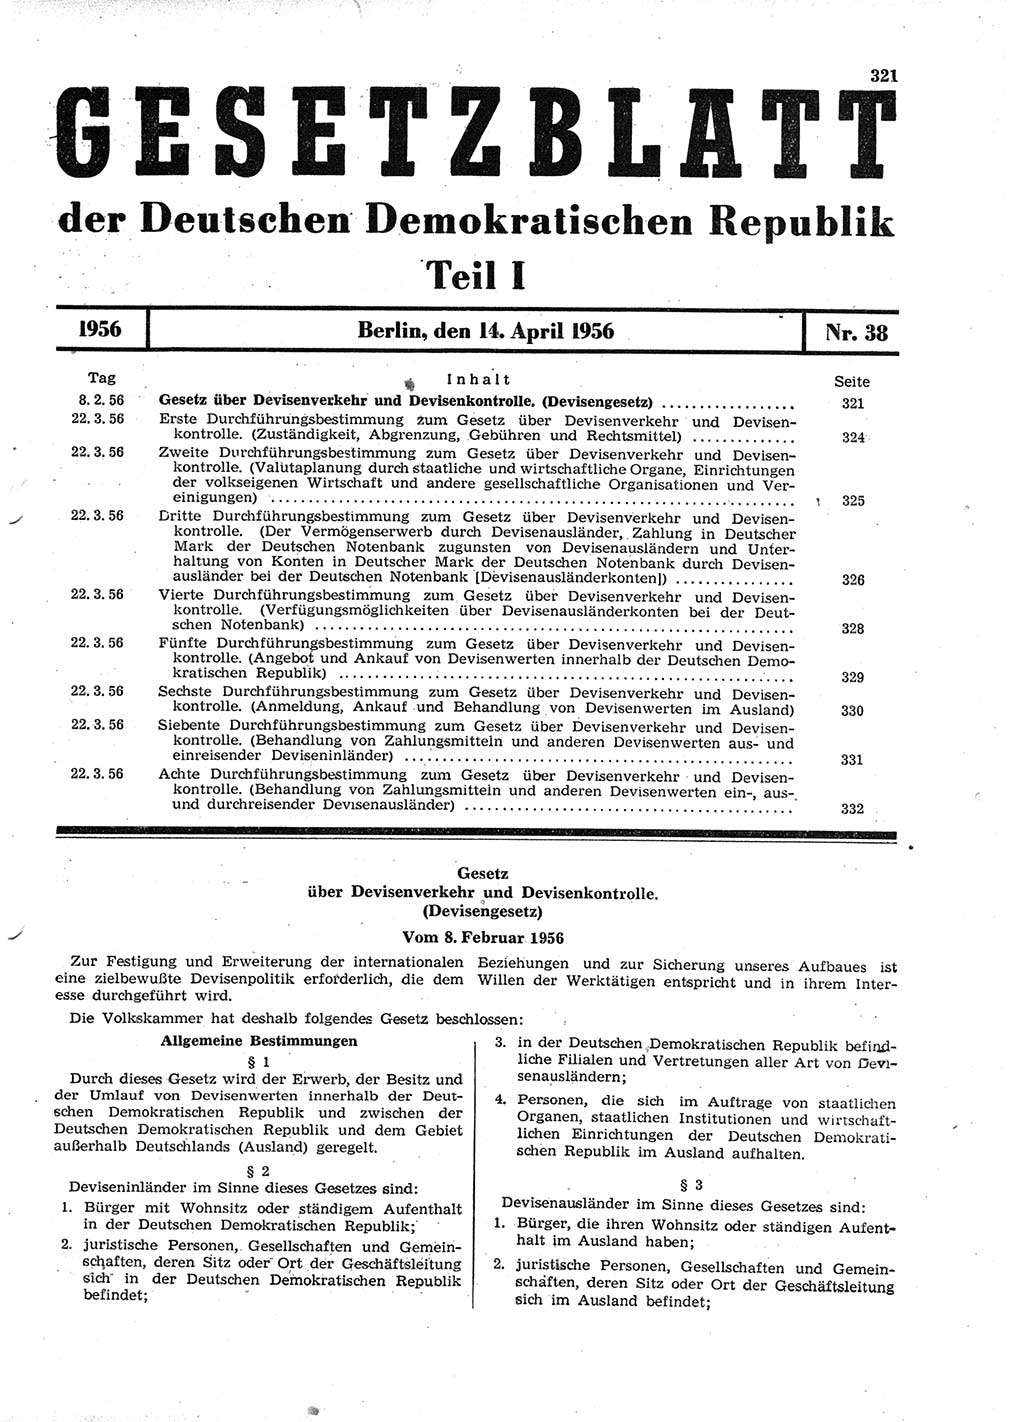 Gesetzblatt (GBl.) der Deutschen Demokratischen Republik (DDR) Teil Ⅰ 1956, Seite 321 (GBl. DDR Ⅰ 1956, S. 321)